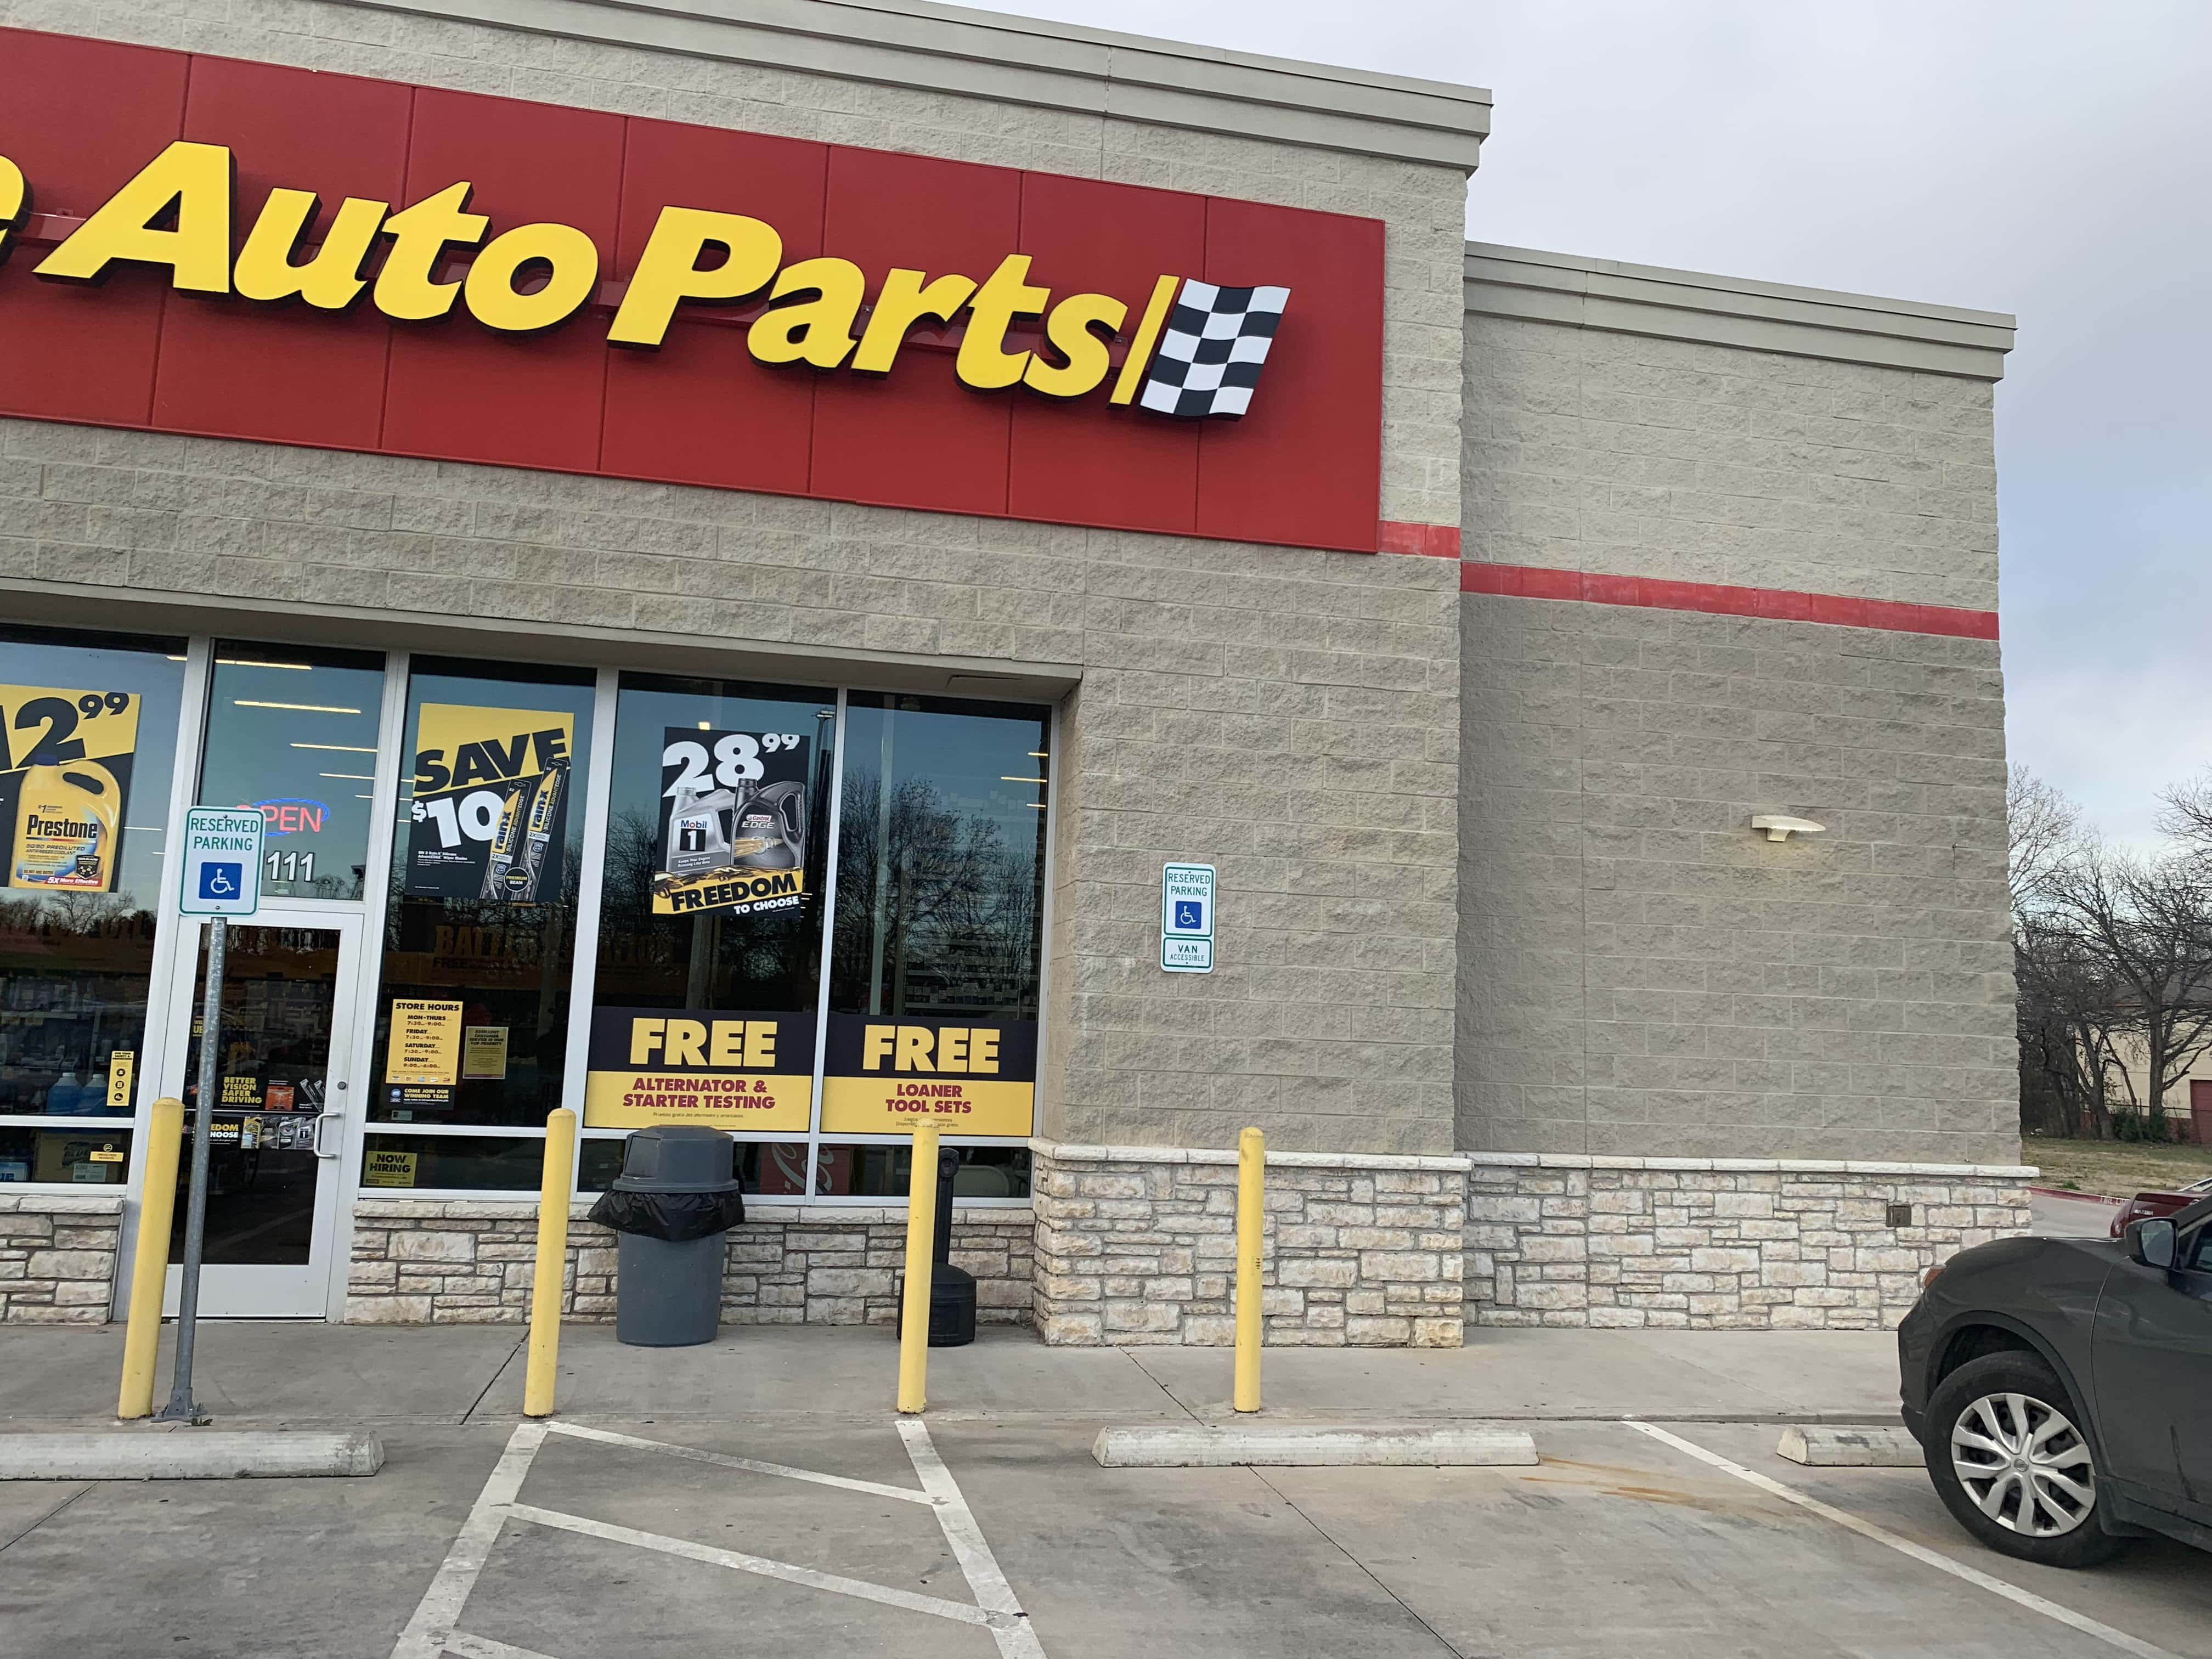 Advance Auto Parts - Irving (TX 75060), US, auto parts store open near me